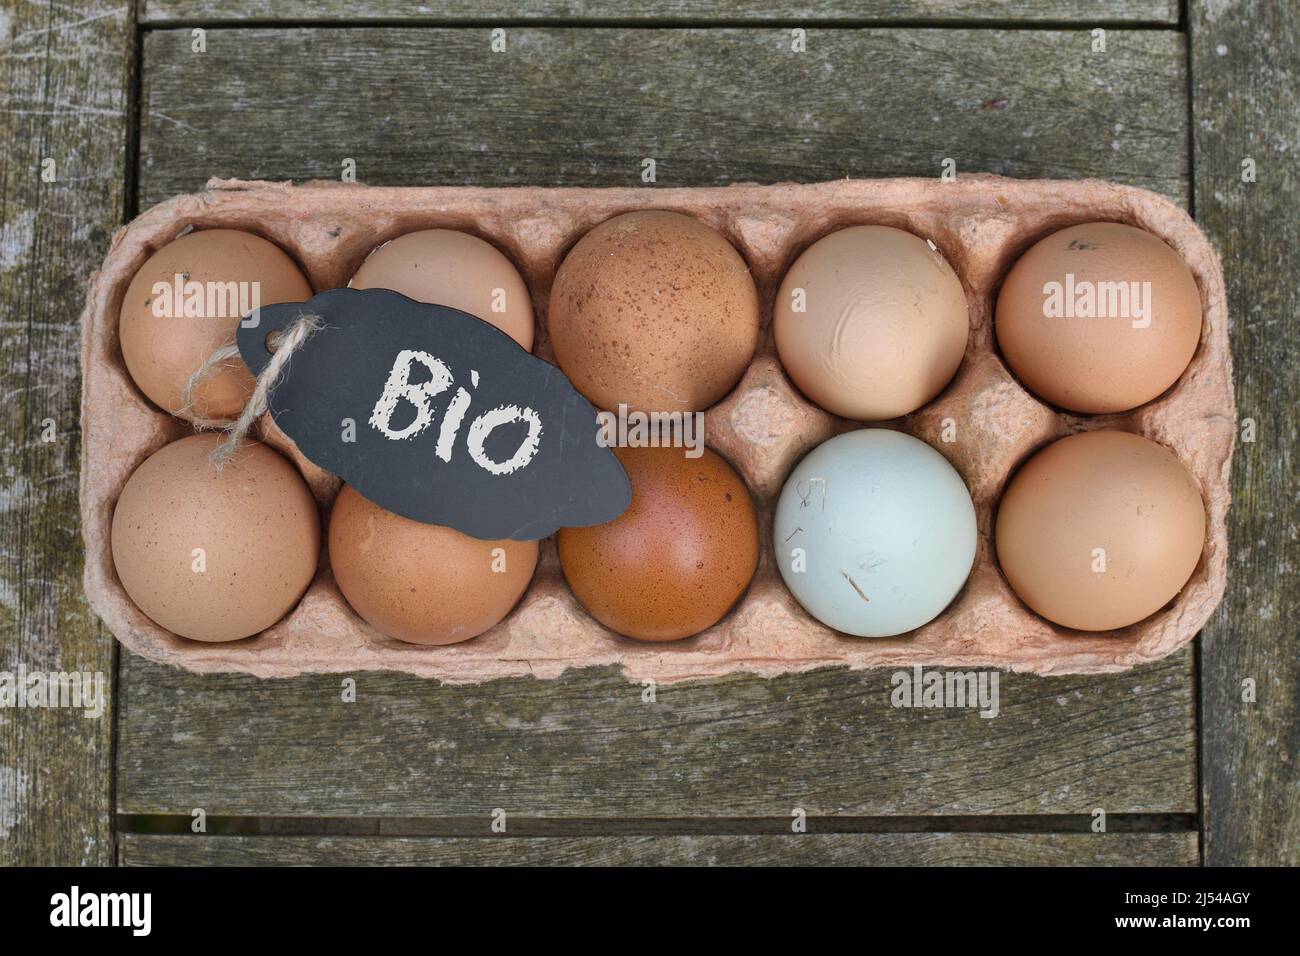 Pizarra con la inscripción 'BIO' en los huevos de pollo en la caja de huevos, Alemania Foto de stock